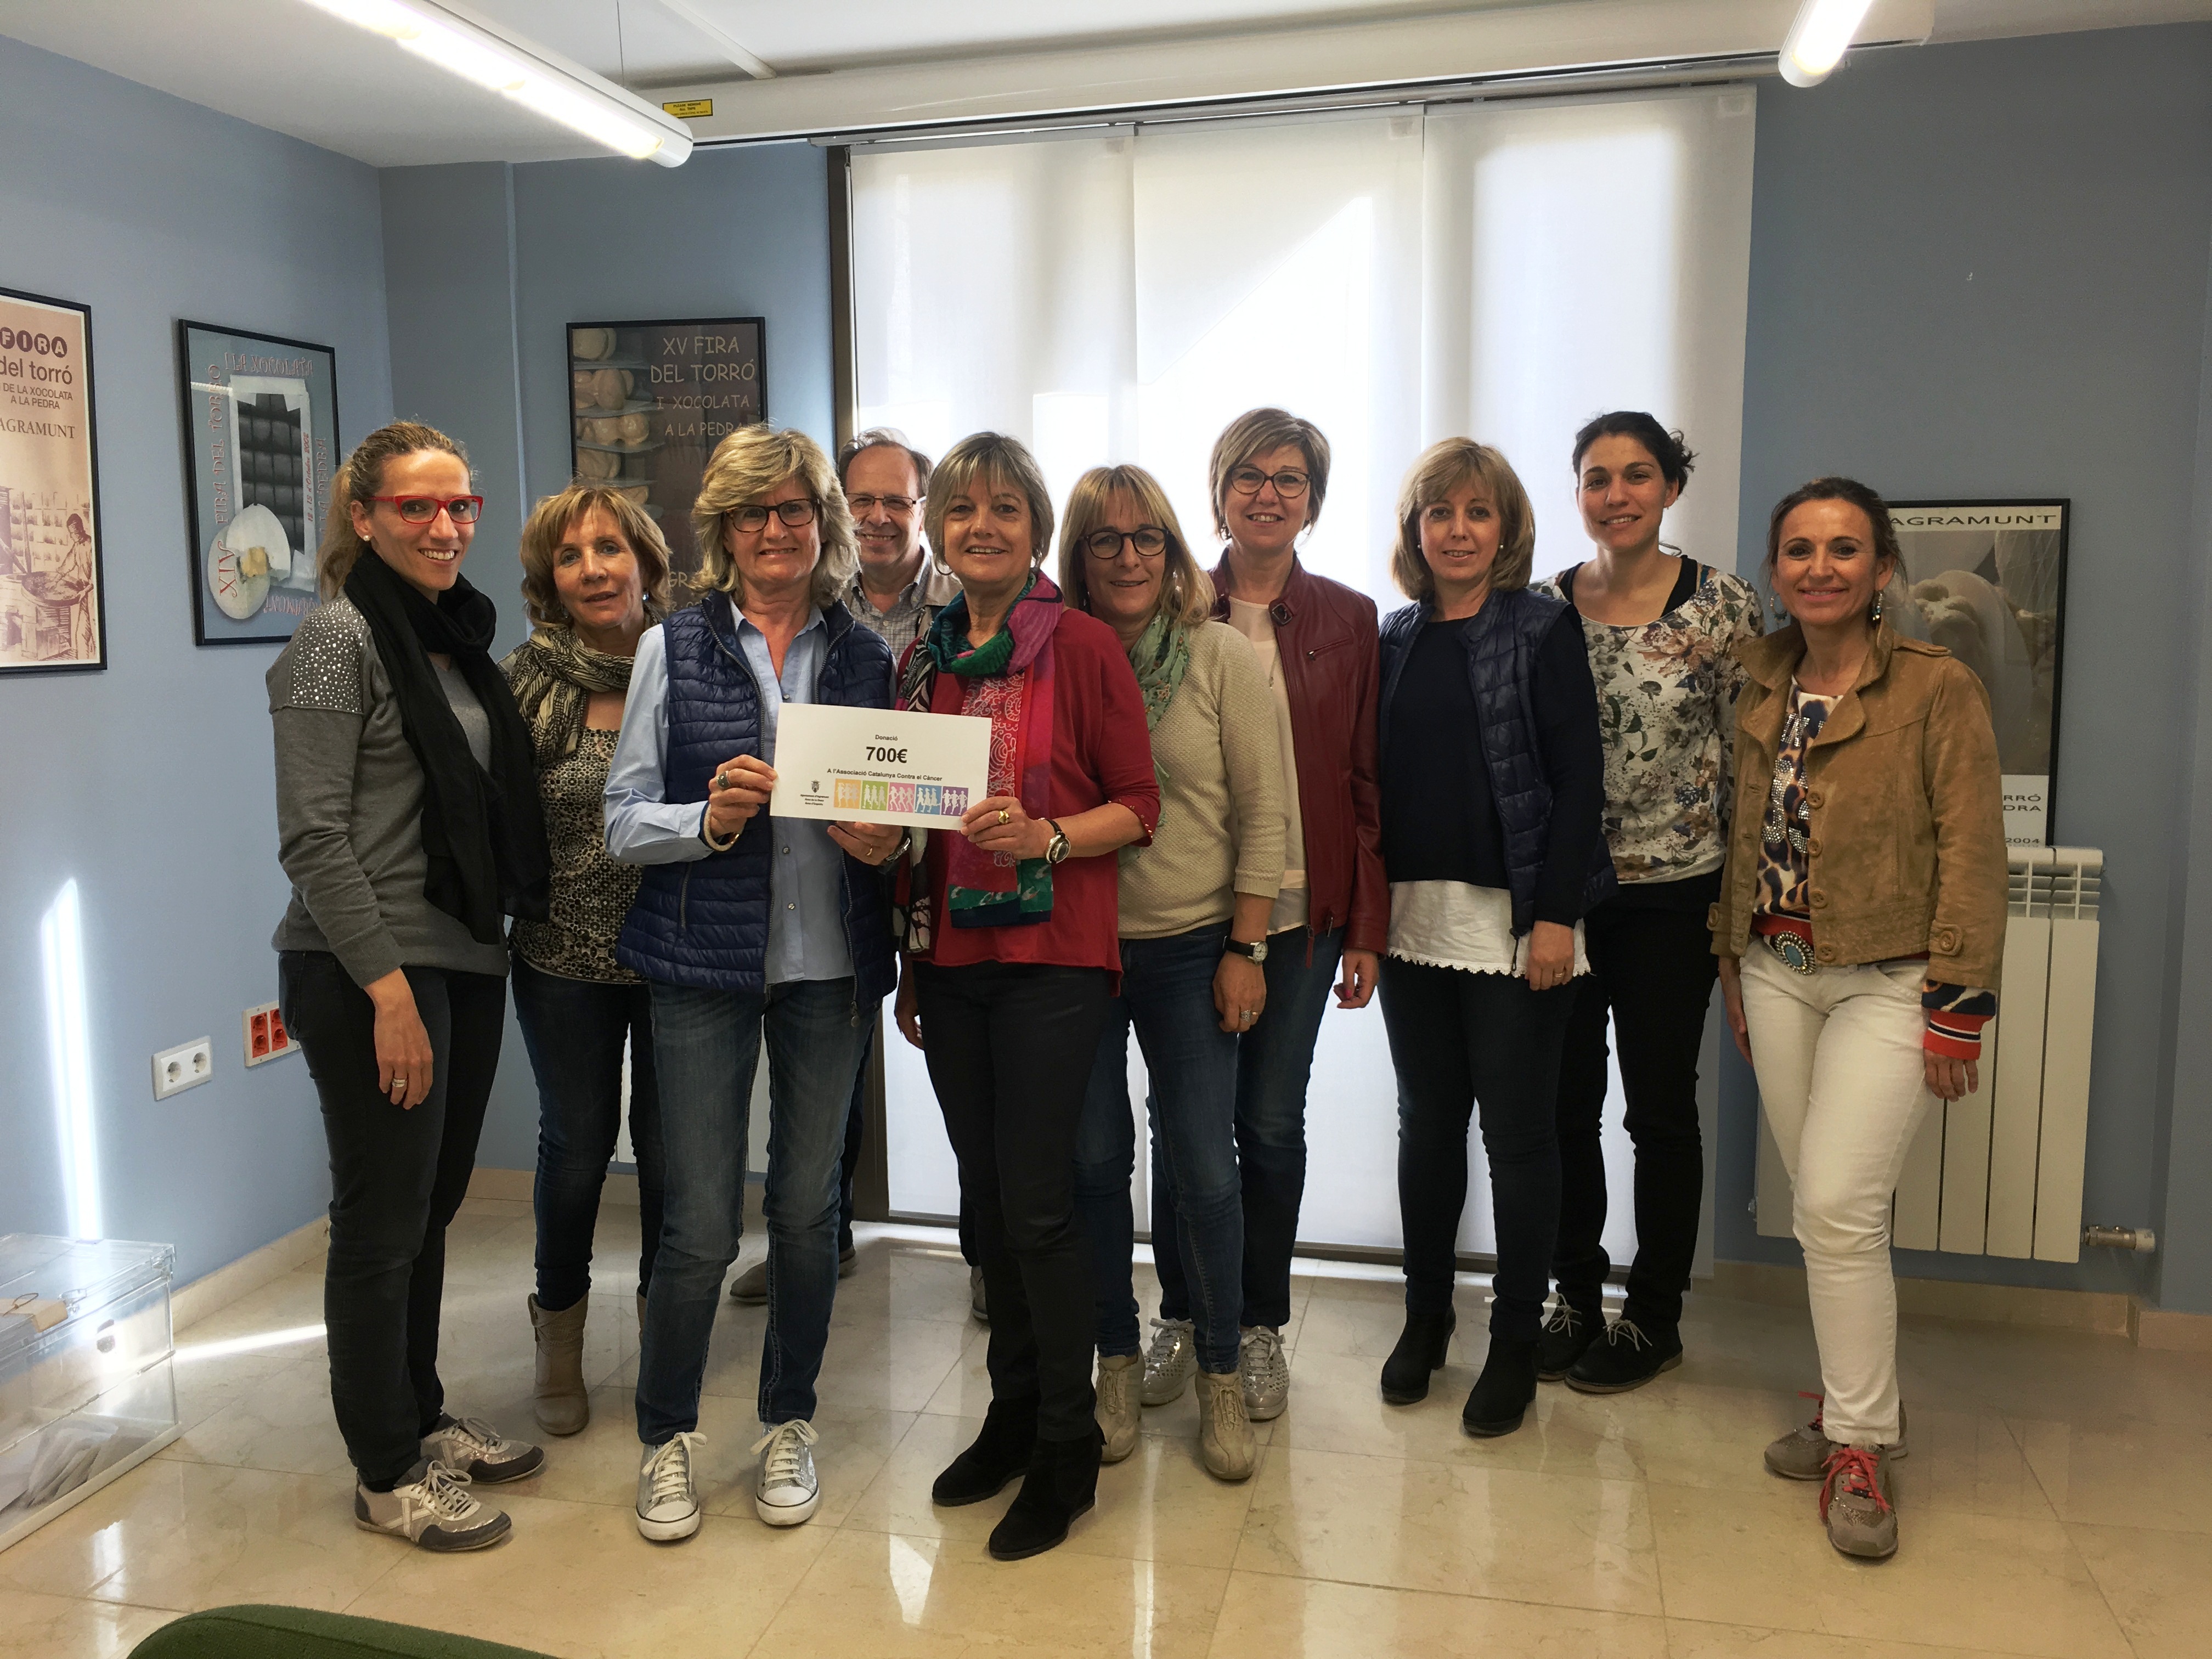 La Cursa de la Dona d’Agramunt dóna 700 euros per la lluita contra el càncer